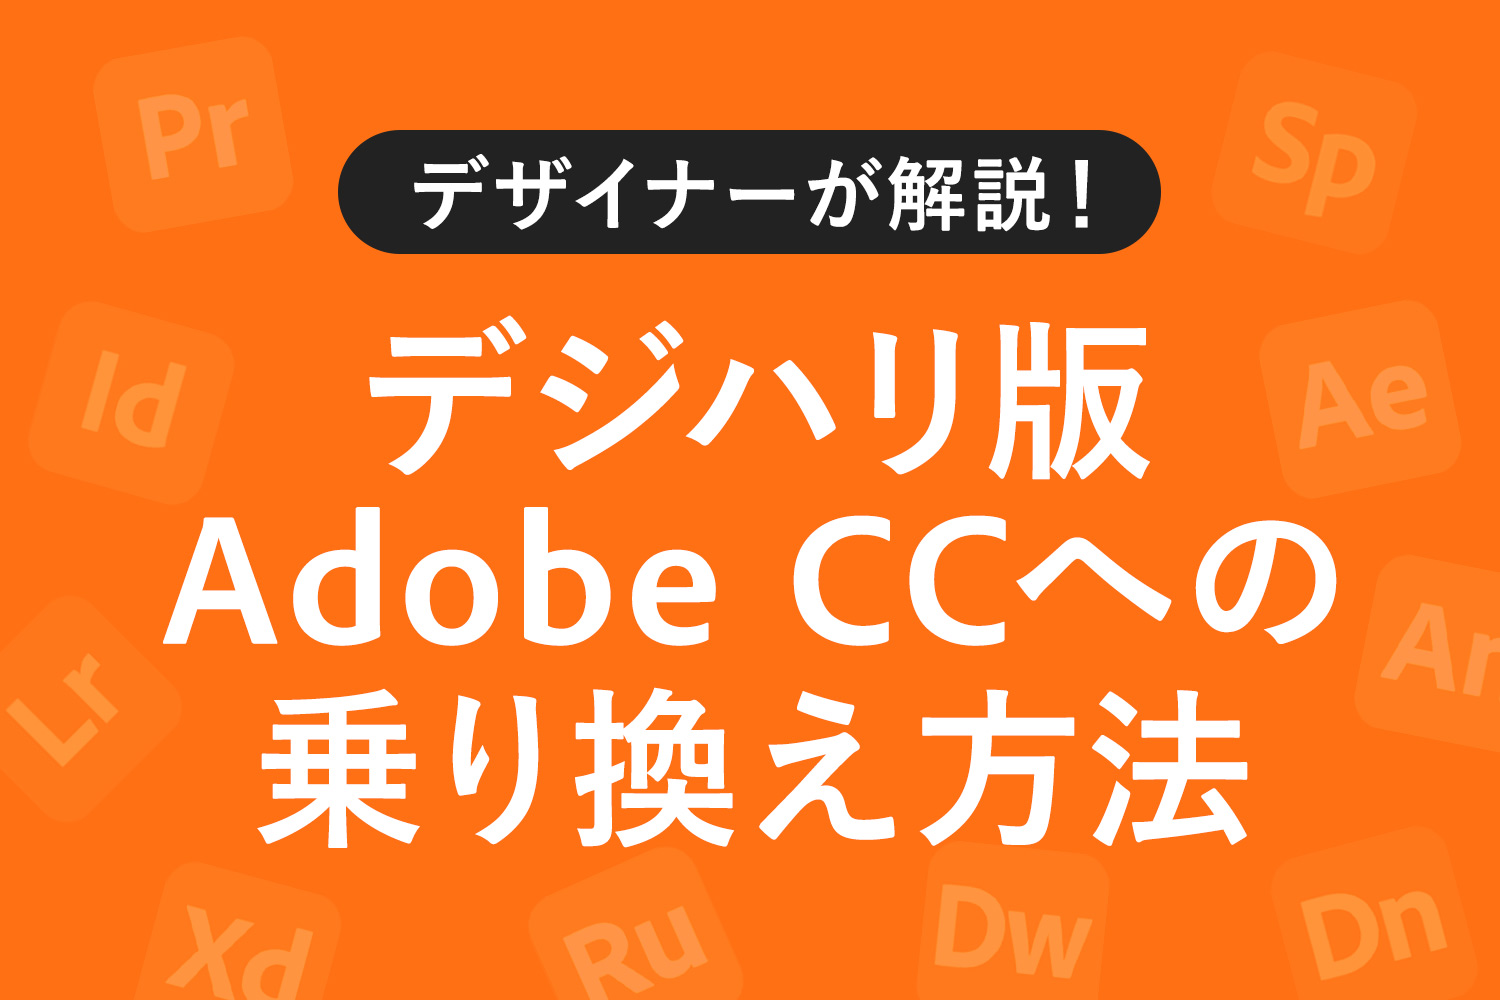 【図解】デジハリ版Adobe CCへの乗り換え・購入方法を徹底解説